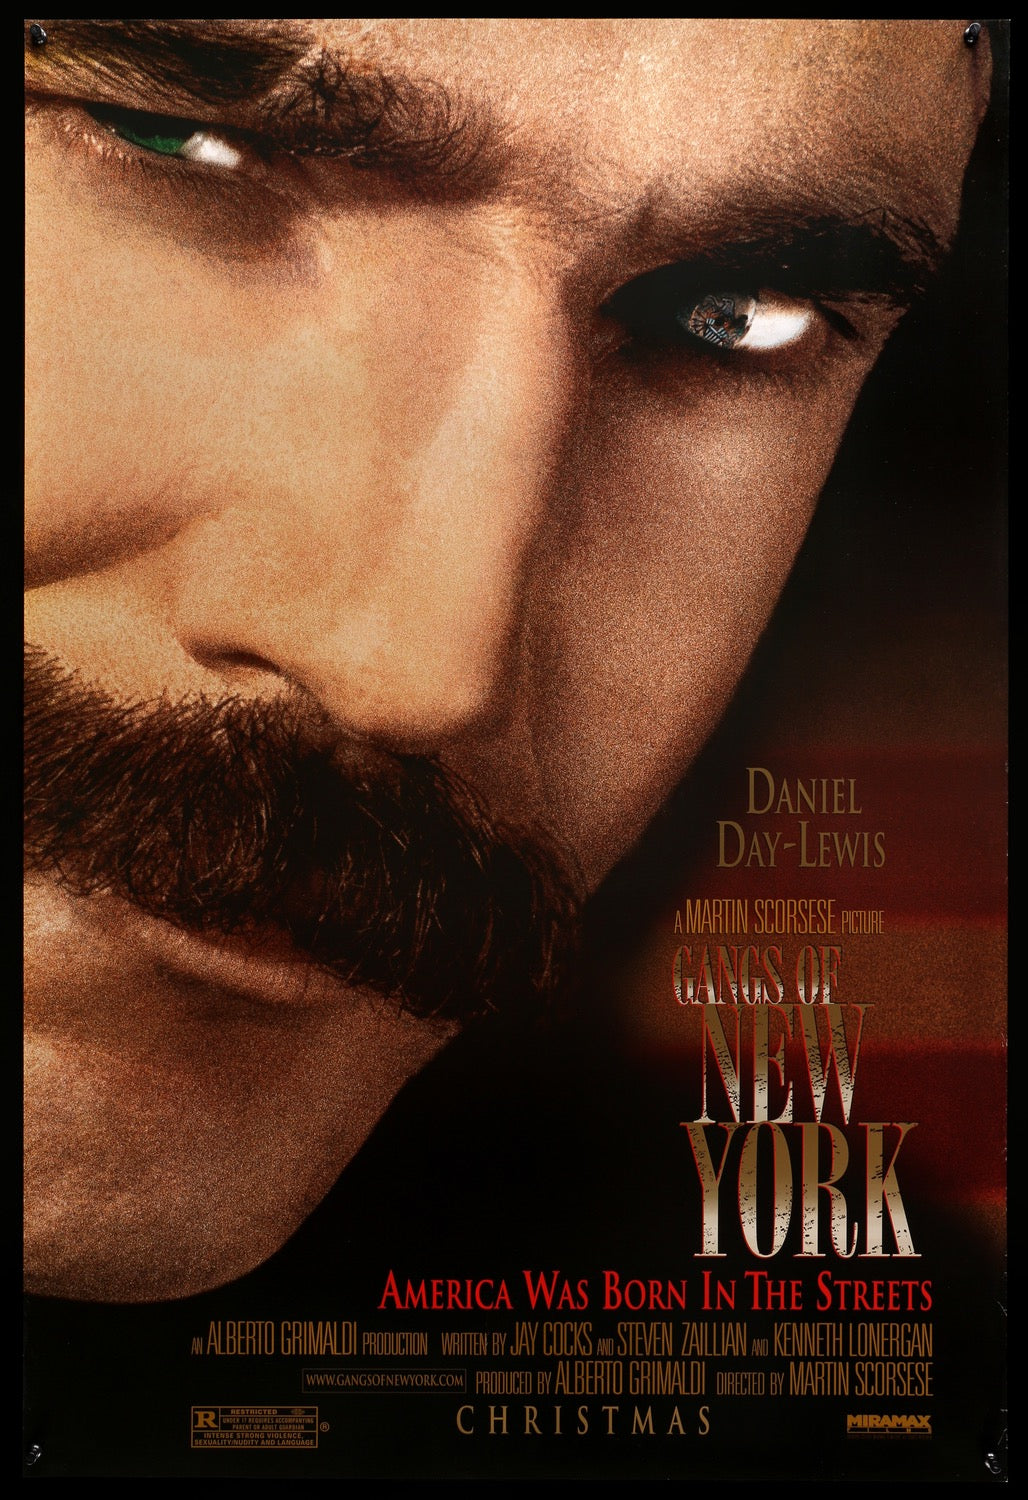 Gangs of New York (2002) original movie poster for sale at Original Film Art